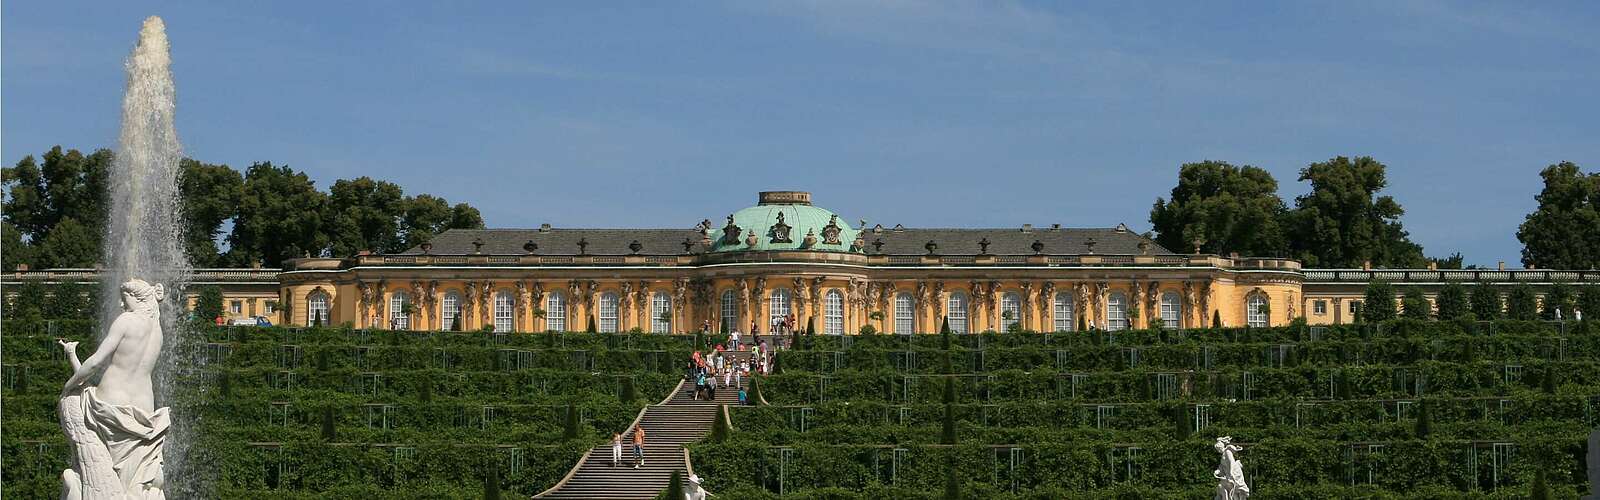 Schloss Sanssouci mit Weinbergterrassen,
        
    

        Foto: TMB-Fotoarchiv/SPSG/Steffen Lehmann